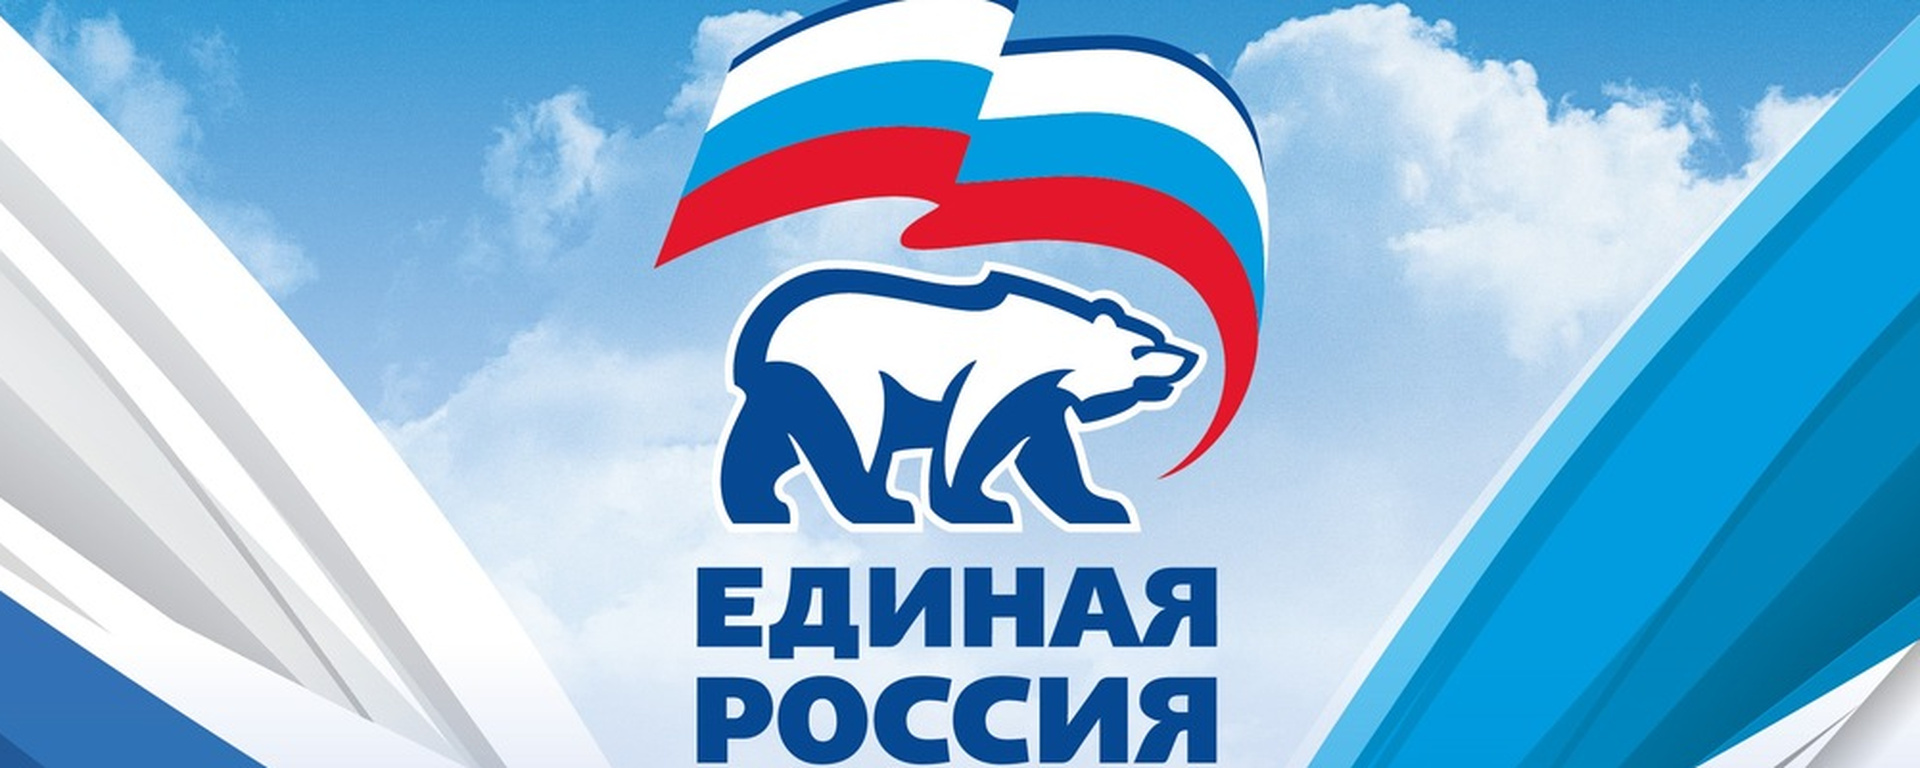 Единая Россия логотип 2022